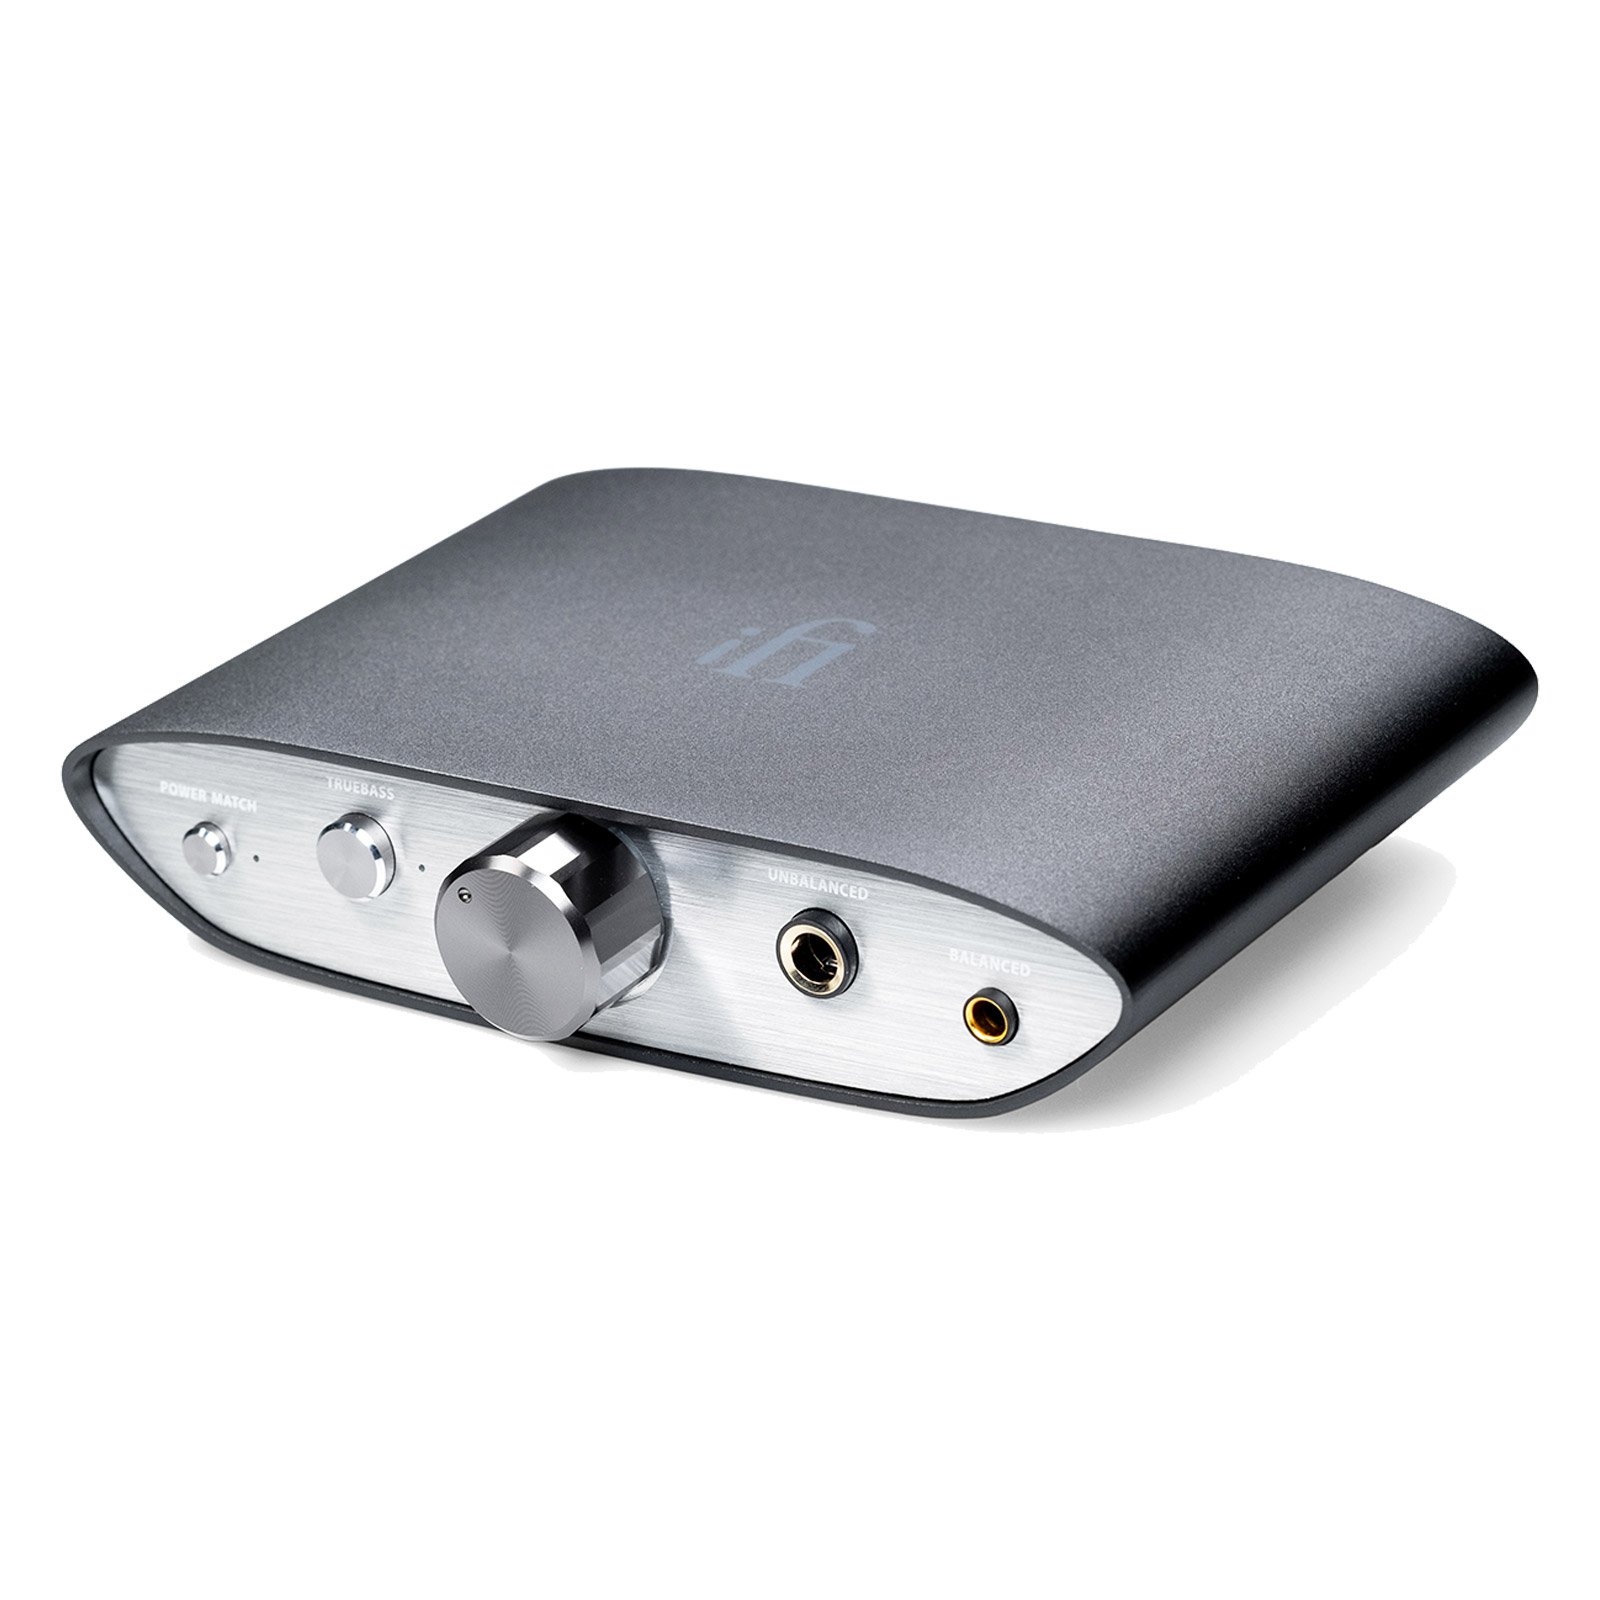 ZEN DAC V2 Compact DAC / Headphone Amplifier, by iFi Audio | Audio